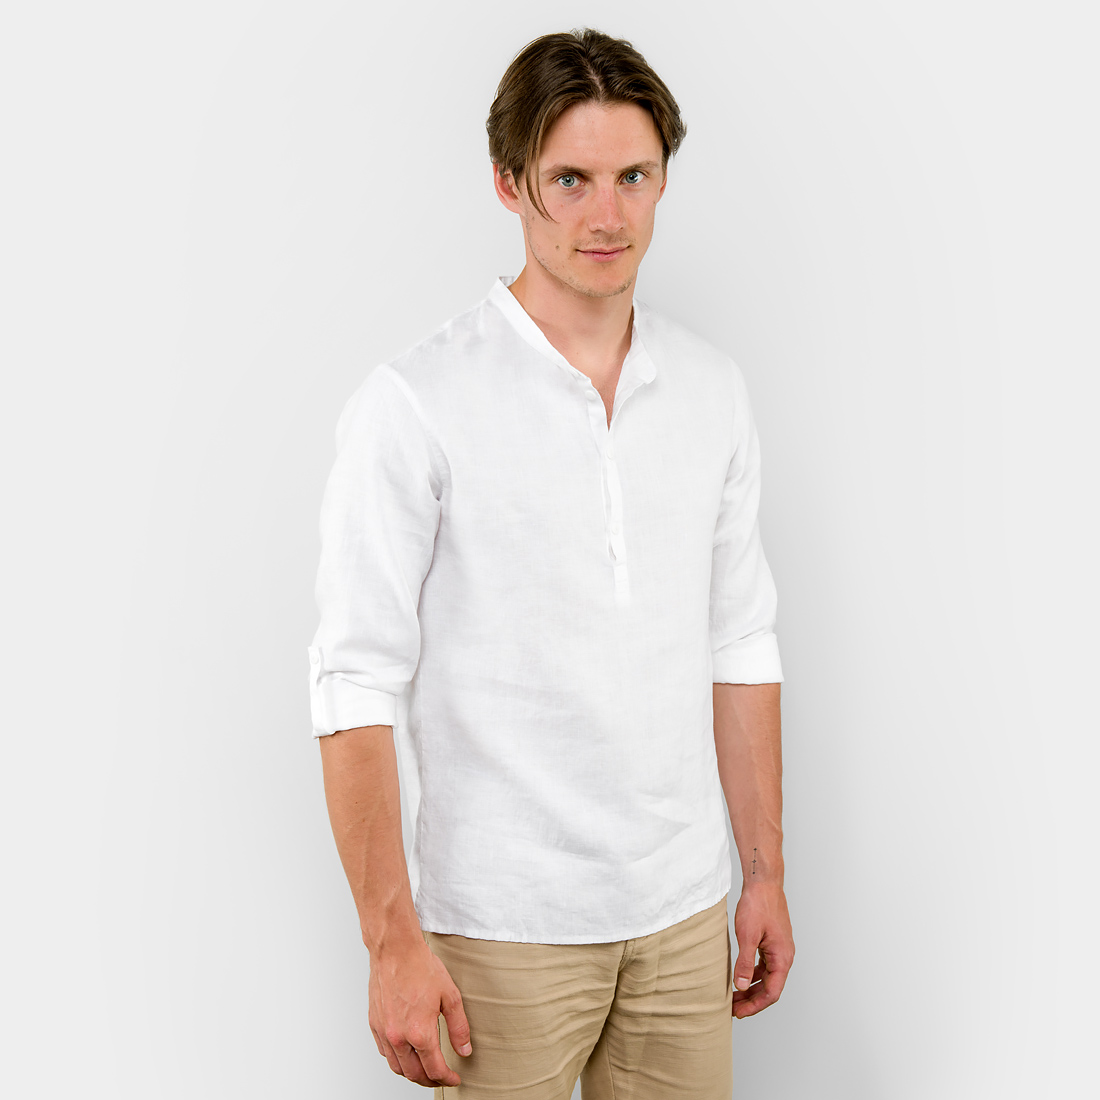 Lininiai balti vyriški marškiniai, reguliuojamomis rankovėmis, pagaminti AB Siūlas